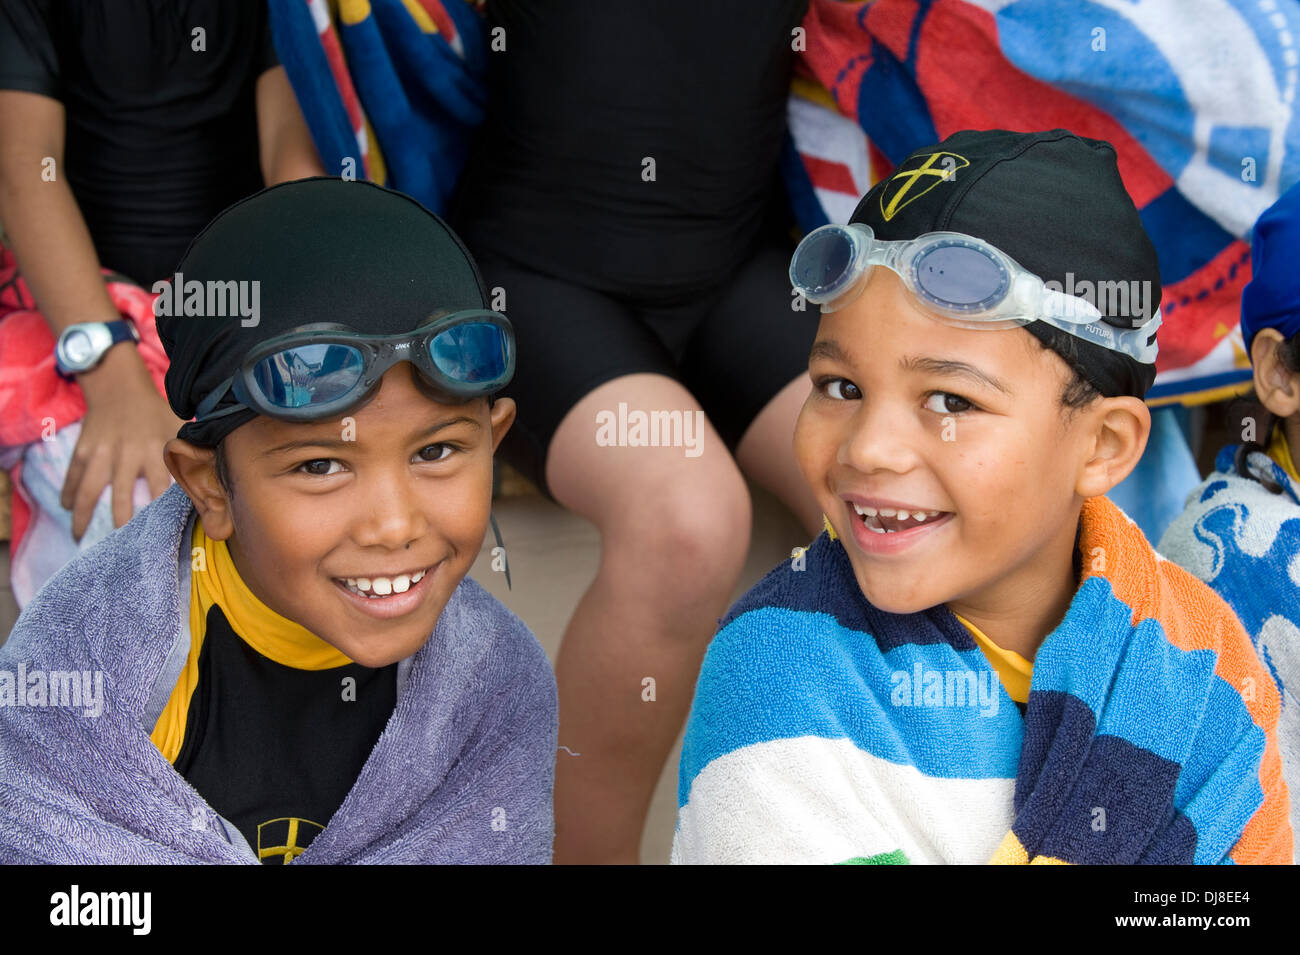 Zwei jungen mit Schwimmbrillen an Str. Georges Schule, Cape Town, Südafrika Stockfoto